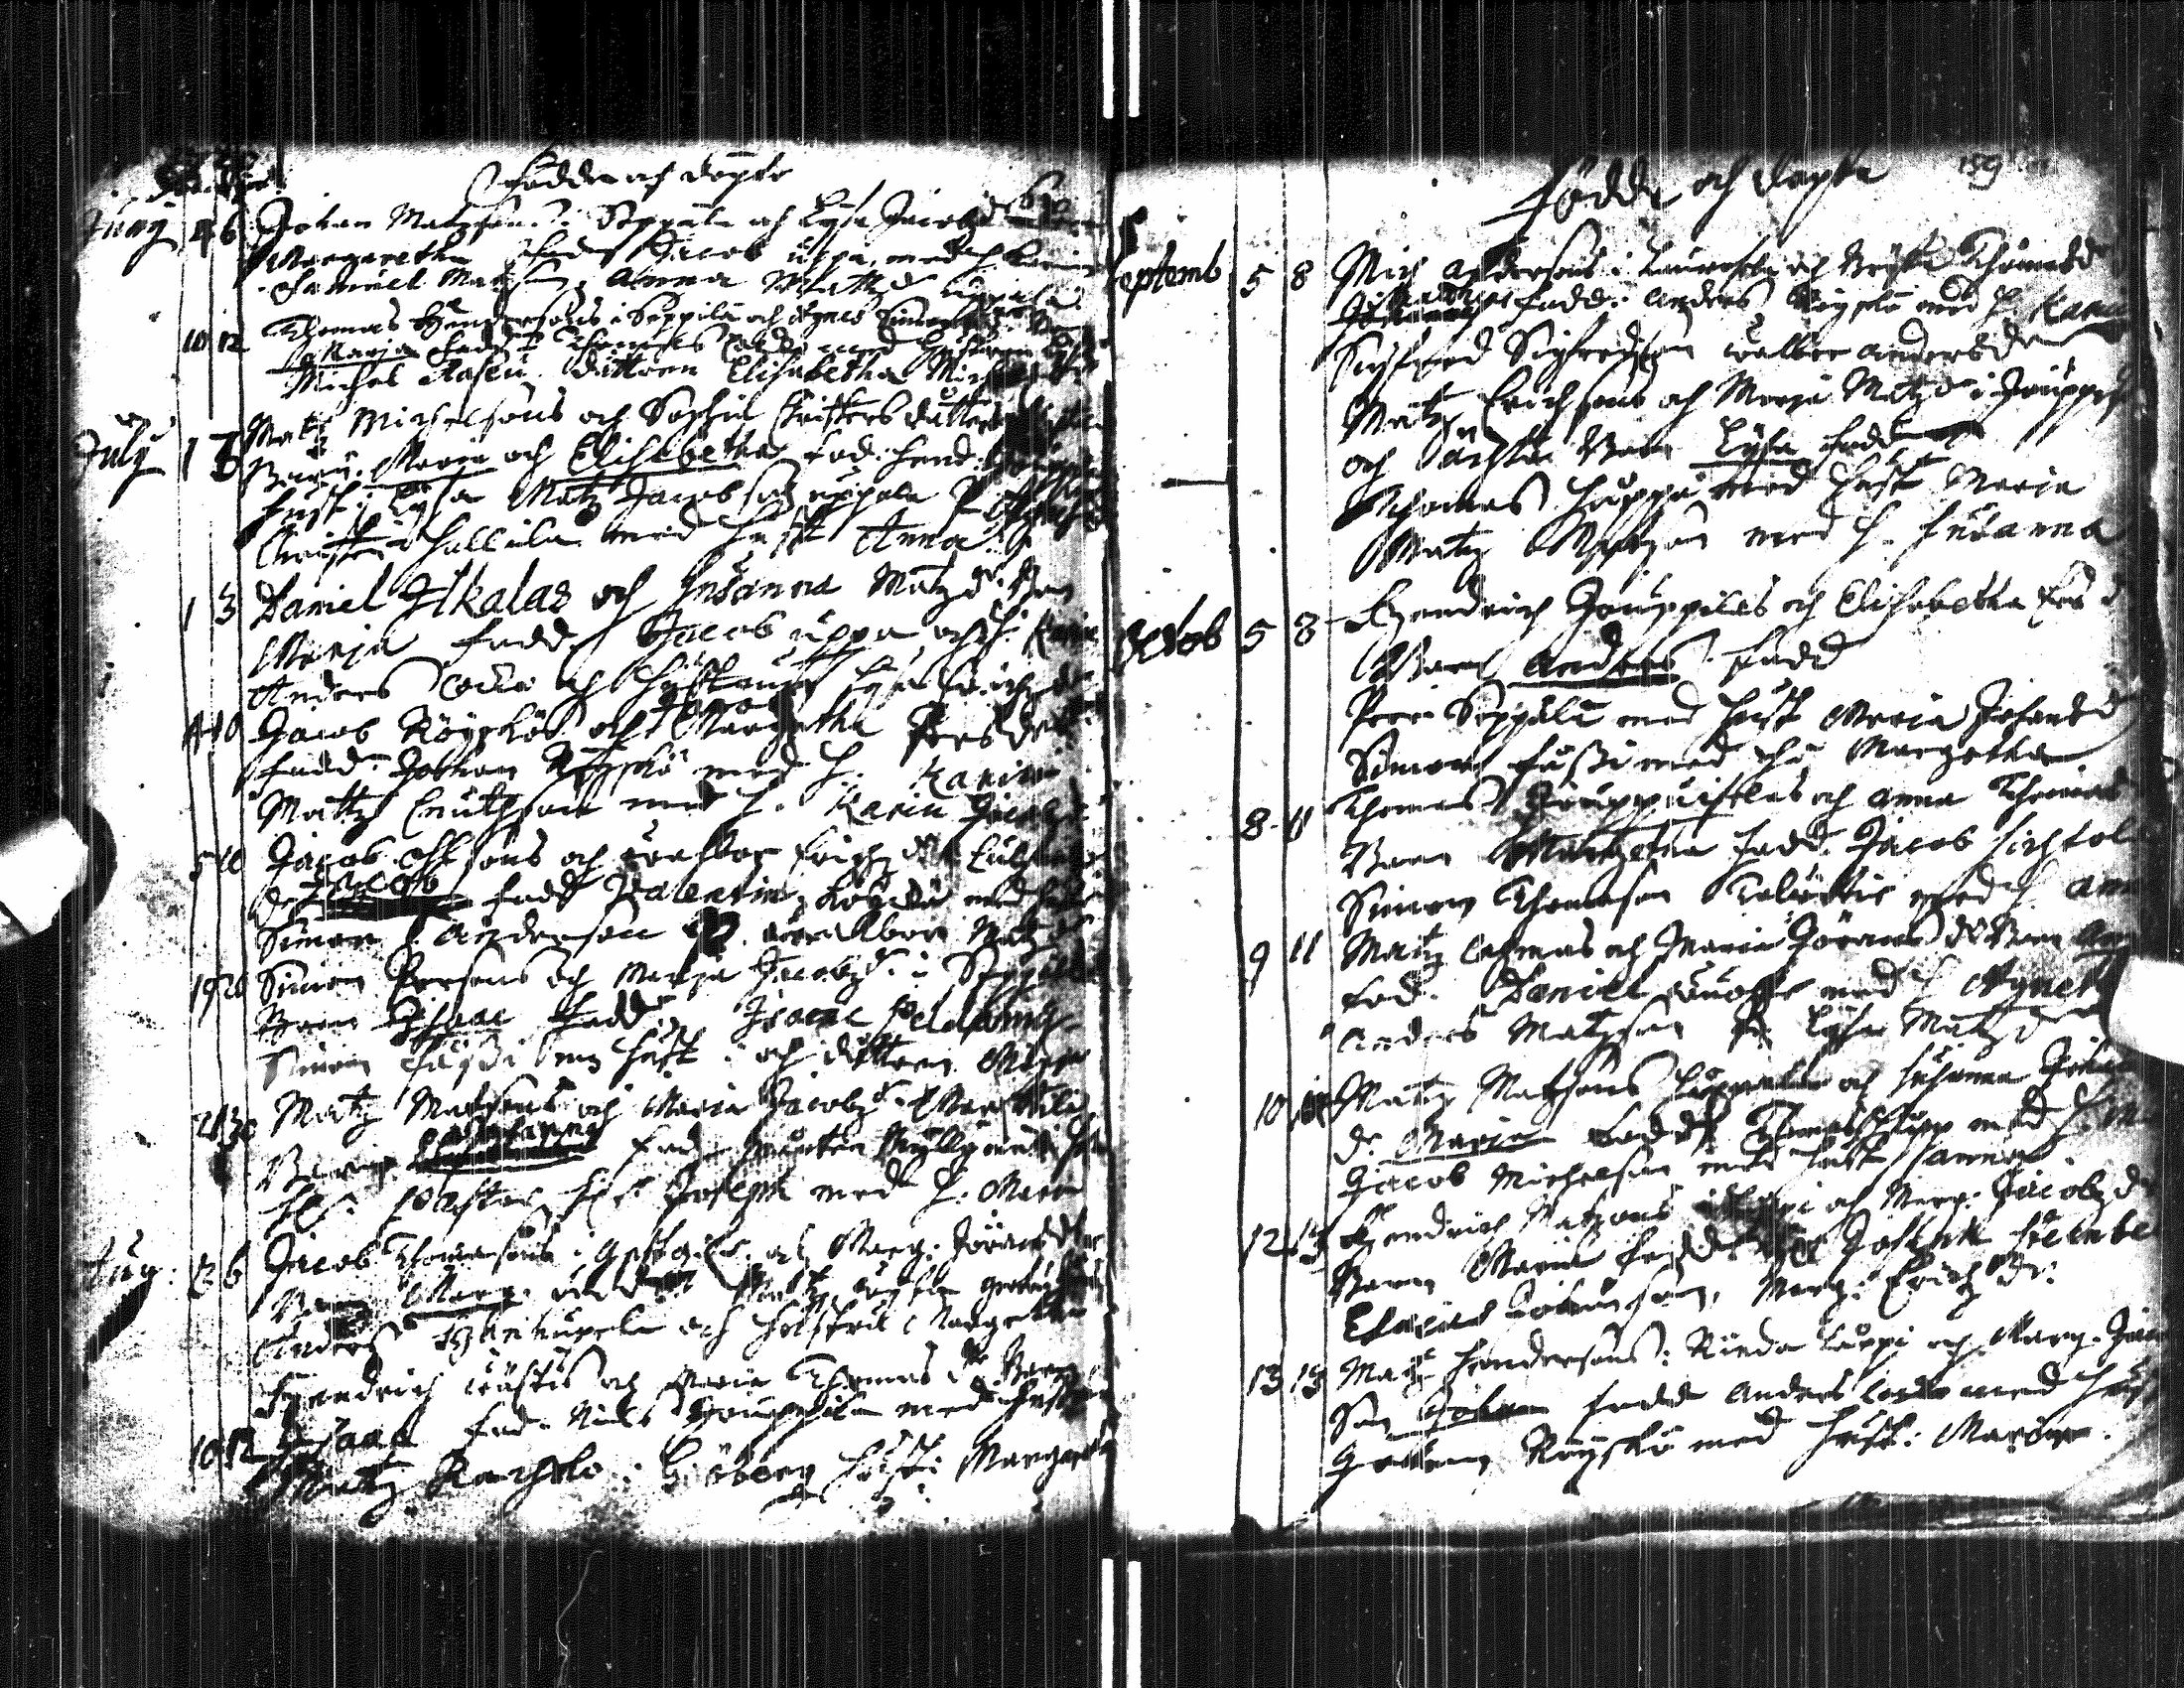 [ ../kirjat/Kirkonkirjat/ilmajoki/syntyneet-vihityt-kuolleet_1675-1725_ik415/kuvat/161.jpg ]